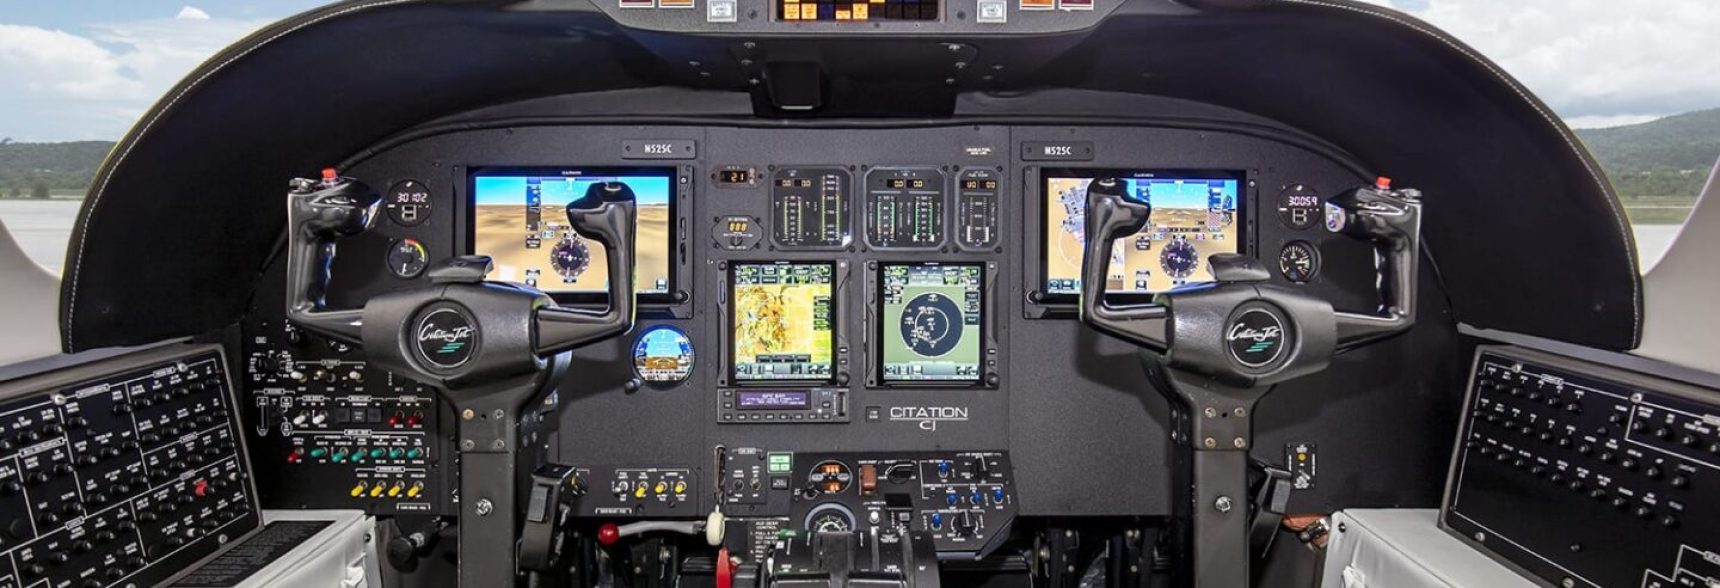 GFC 600 Autopilot Panel Garmin